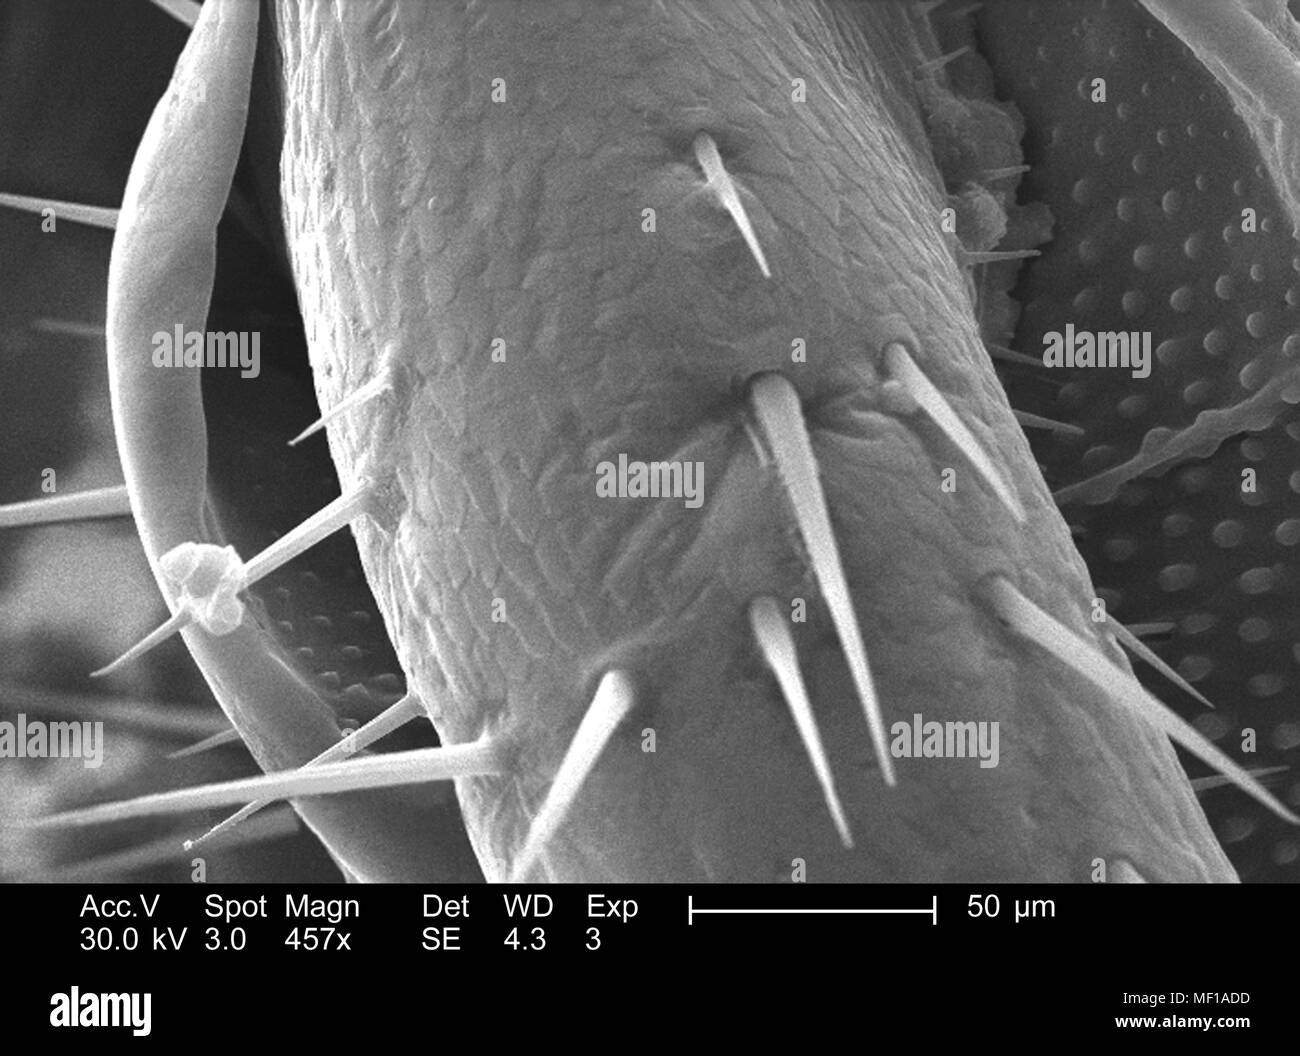 Exoskeletal superficie di un misterioso roach, raffigurato nella 457x di scansione ingrandita al microscopio elettronico (SEM) immagine, 2005. Immagine cortesia di centri per il controllo delle malattie (CDC) / Janice Haney Carr. () Foto Stock